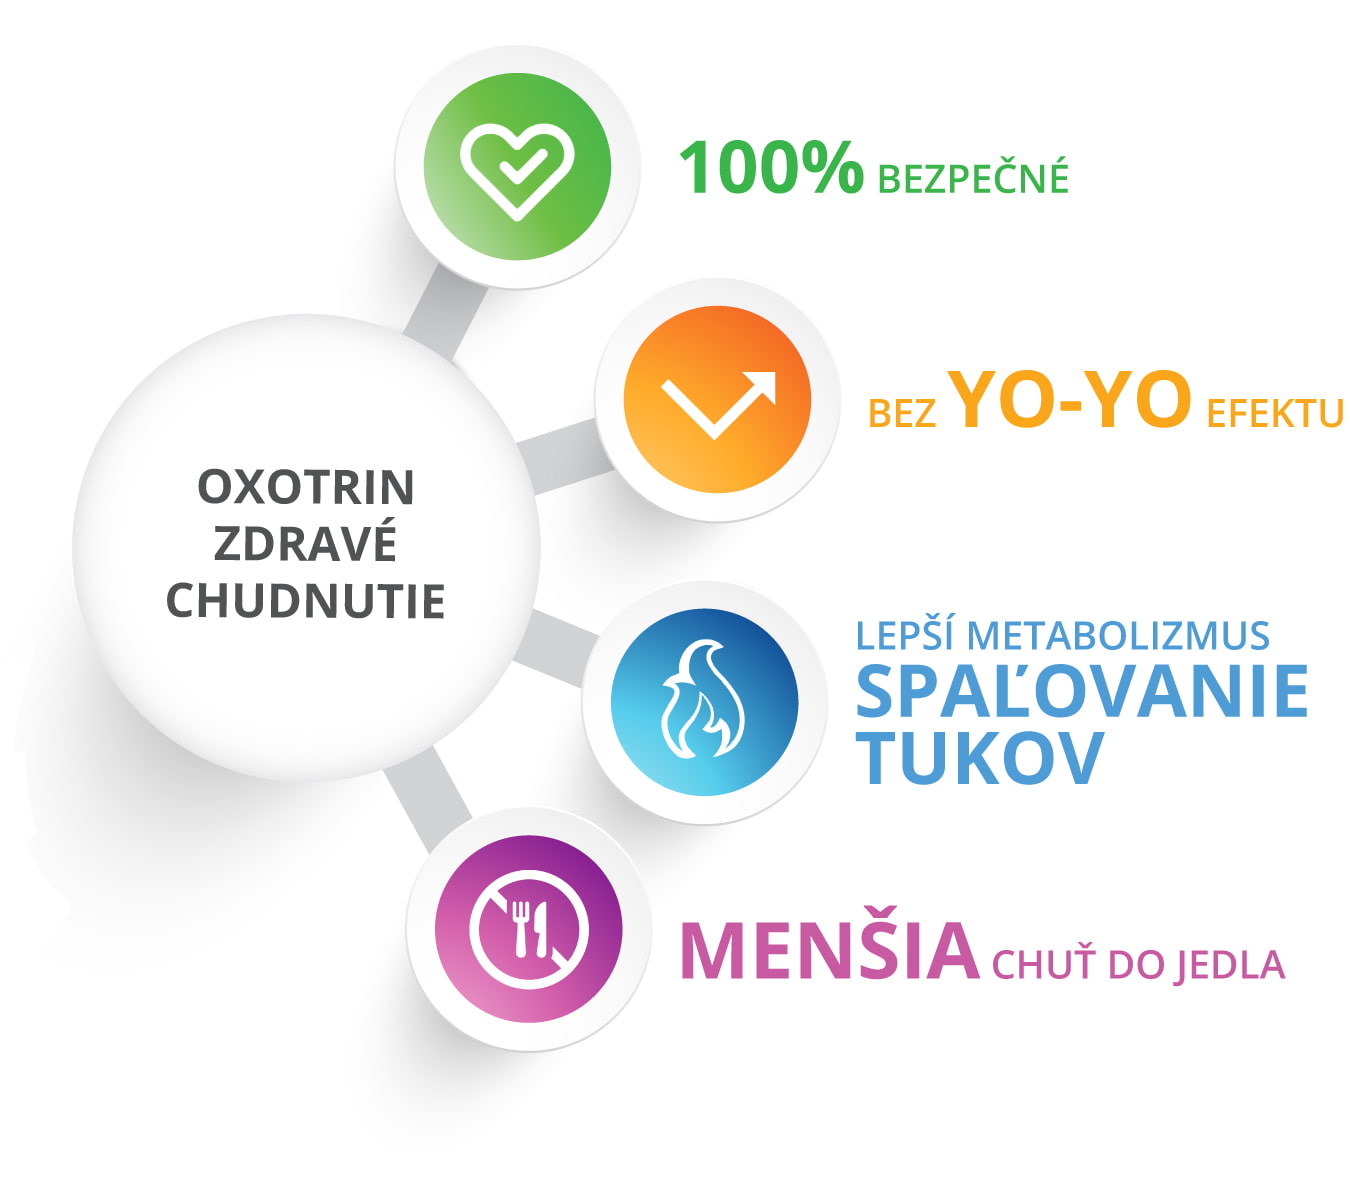 Zdravé chudnutie je 100% bezpečné, bez yoyo efektu, zlepšuje spaľovanie tukov a metabolizmus a znižuje apetít. 